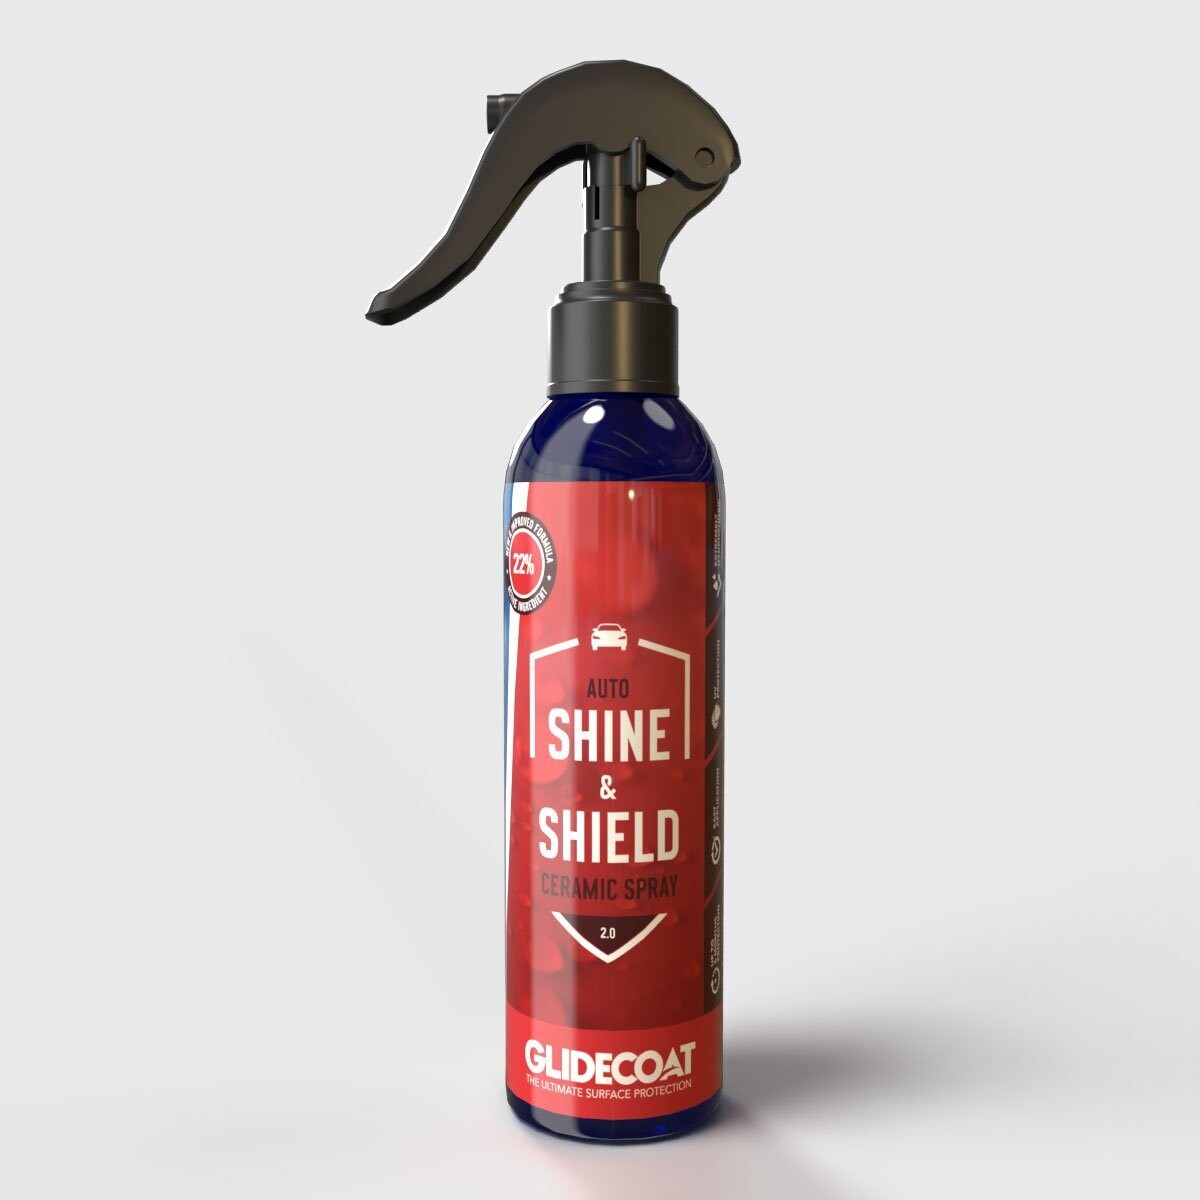 Auto Shine & Shield 2.0 Ceramic Spray - 8 oz